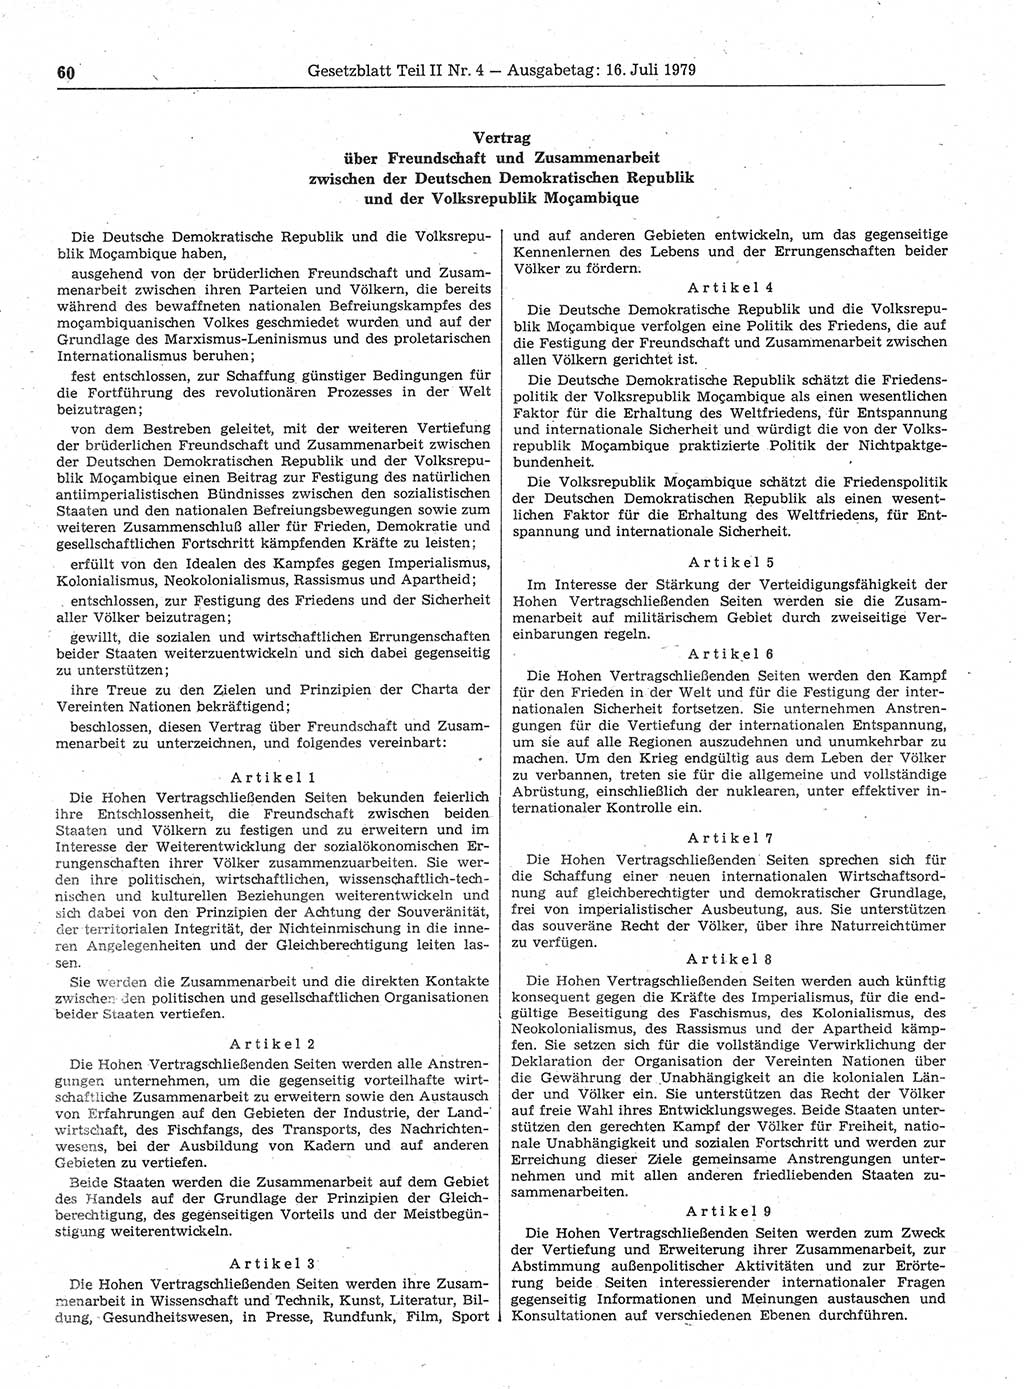 Gesetzblatt (GBl.) der Deutschen Demokratischen Republik (DDR) Teil ⅠⅠ 1979, Seite 60 (GBl. DDR ⅠⅠ 1979, S. 60)